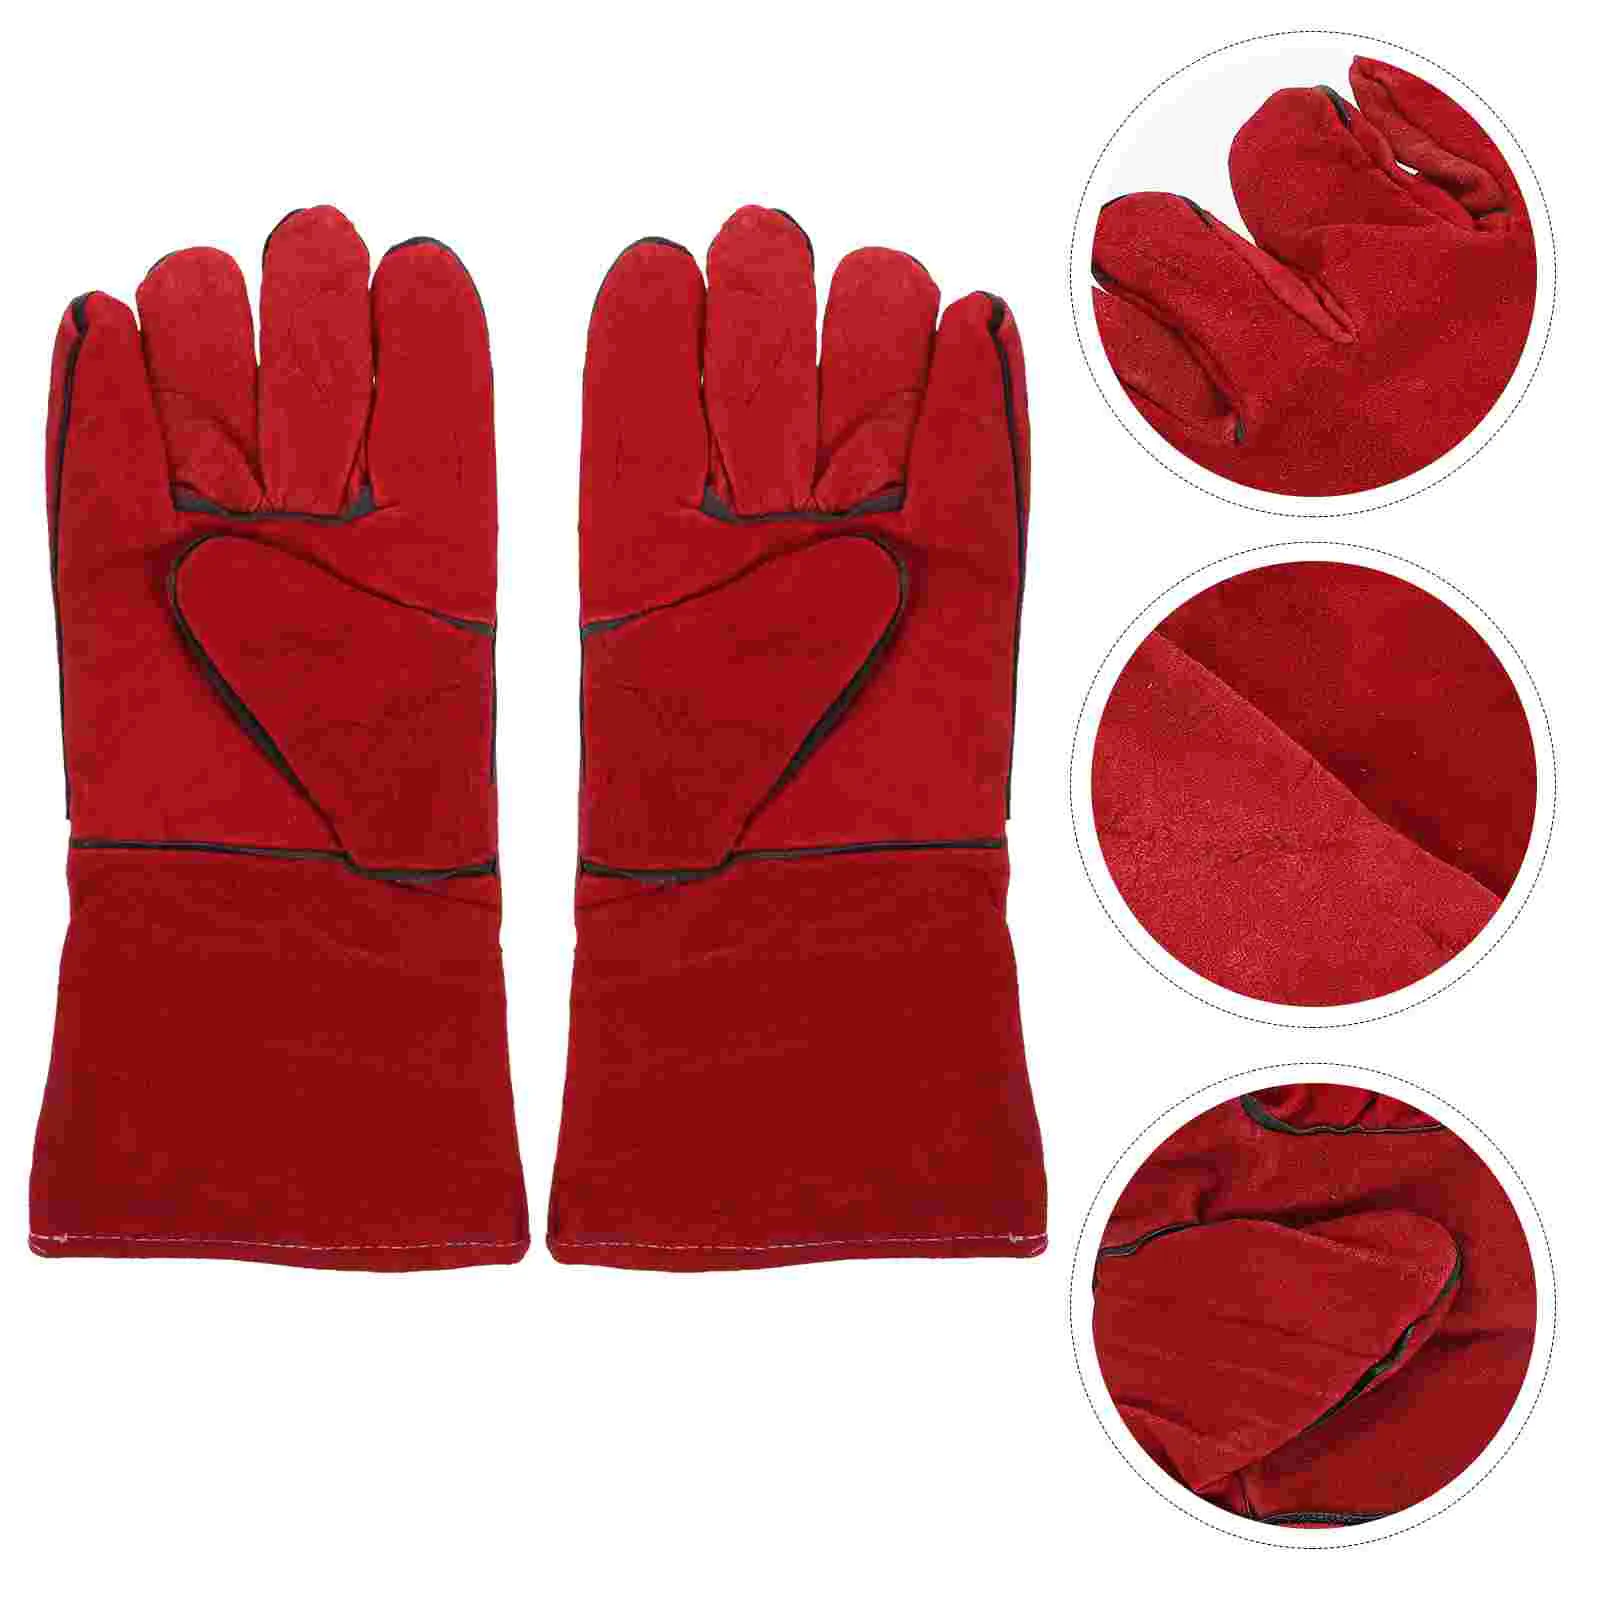 

1 пара перчаток против укусов перчатки для кормления попугаев защитные перчатки для домашних животных (красный)